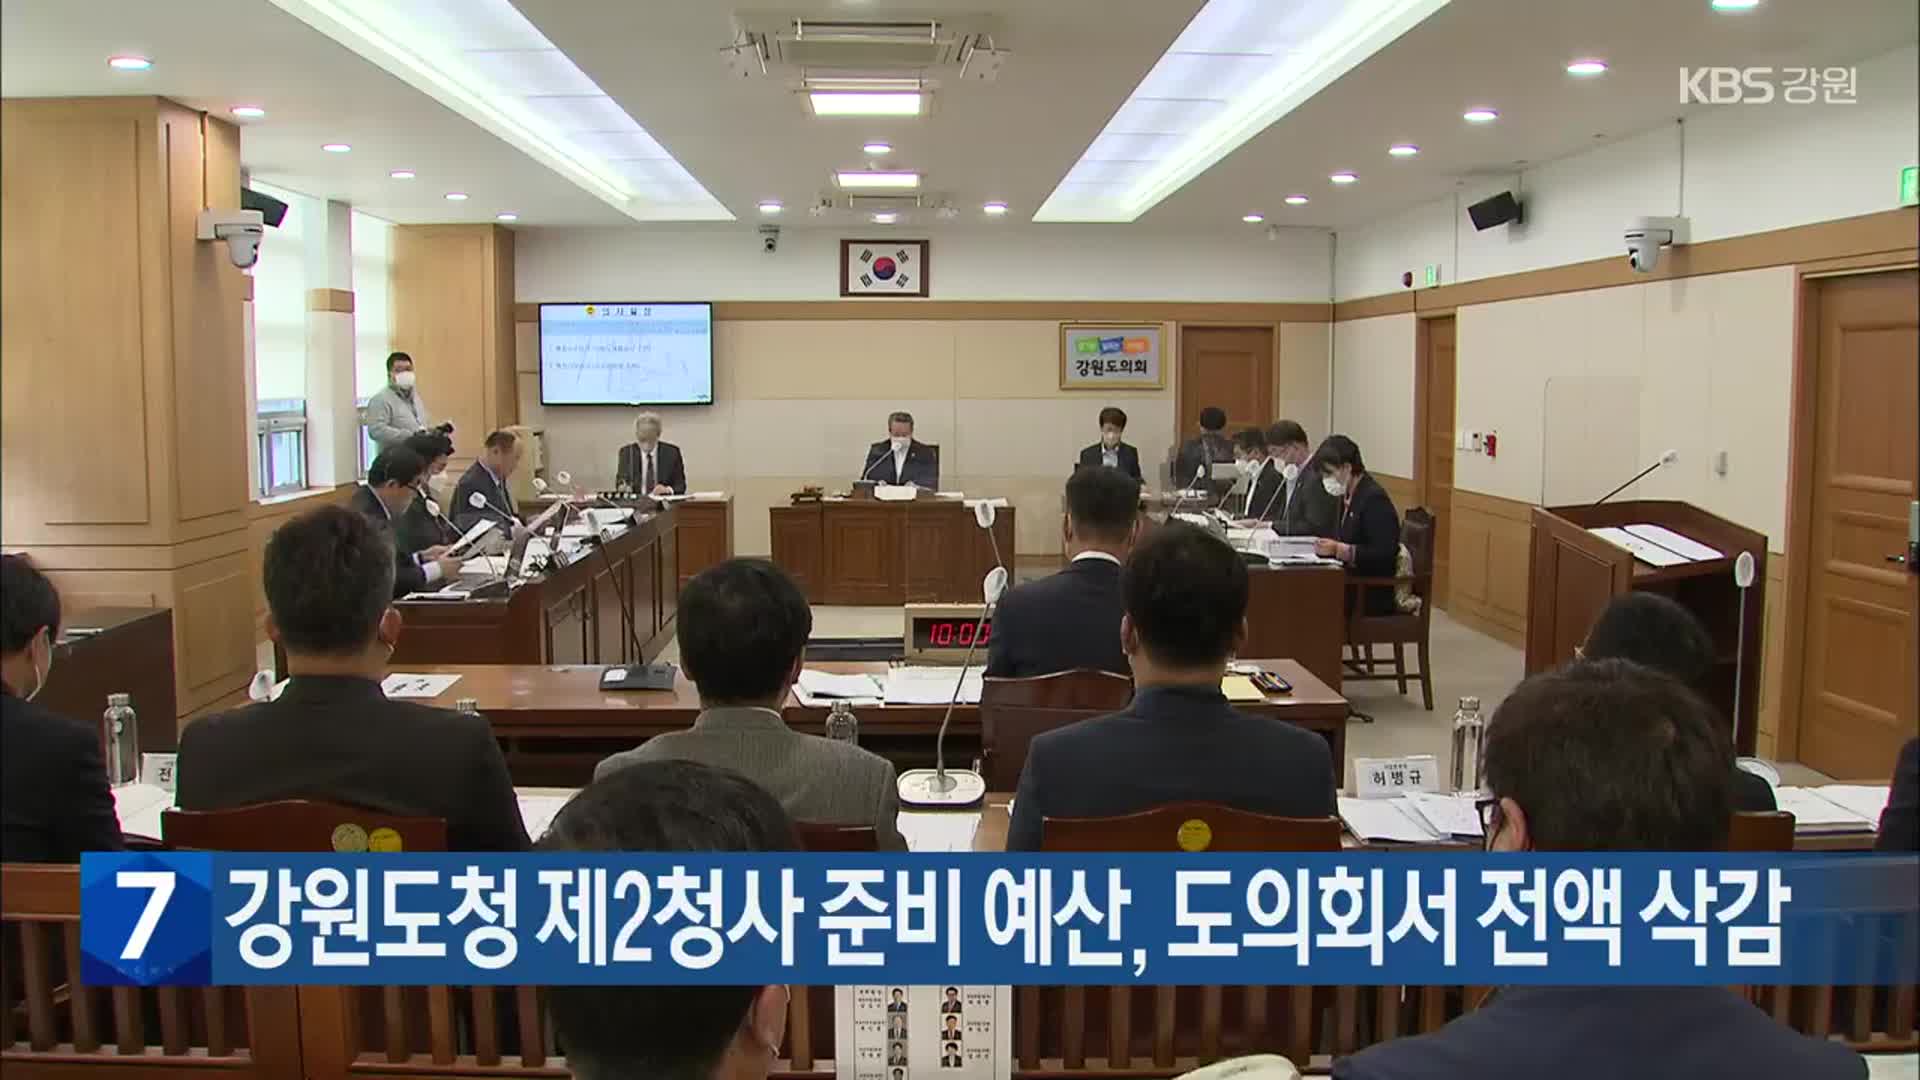 강원도청 제2청사 준비 예산, 도의회서 전액 삭감